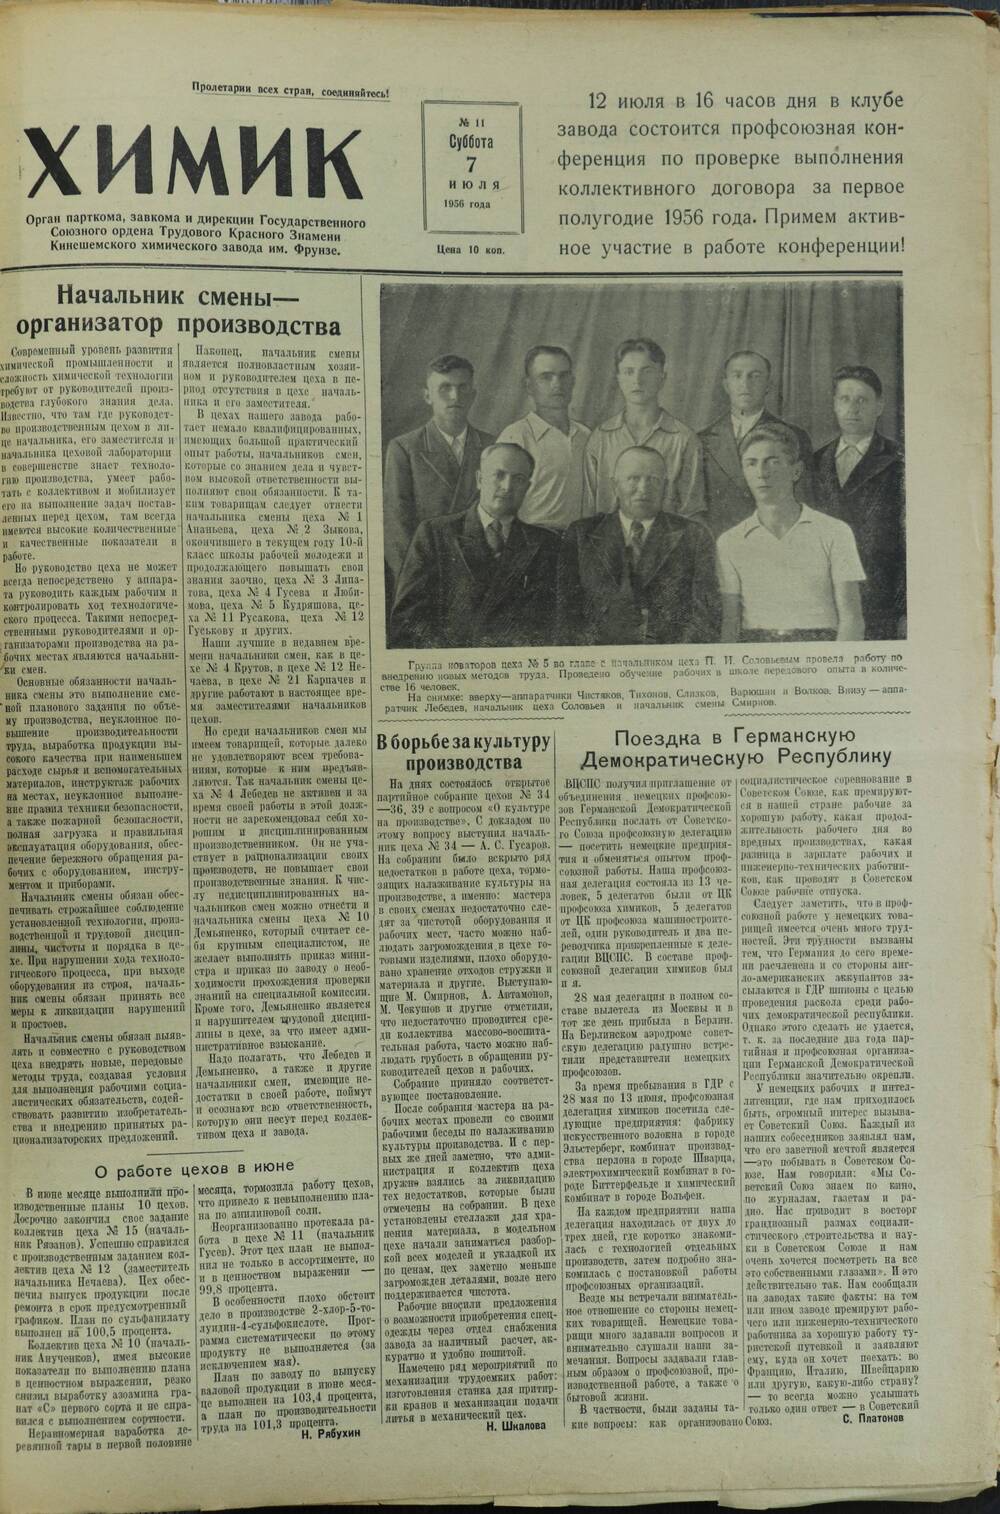 Газета «Химик» № 11 от 7 июля 1956 года.